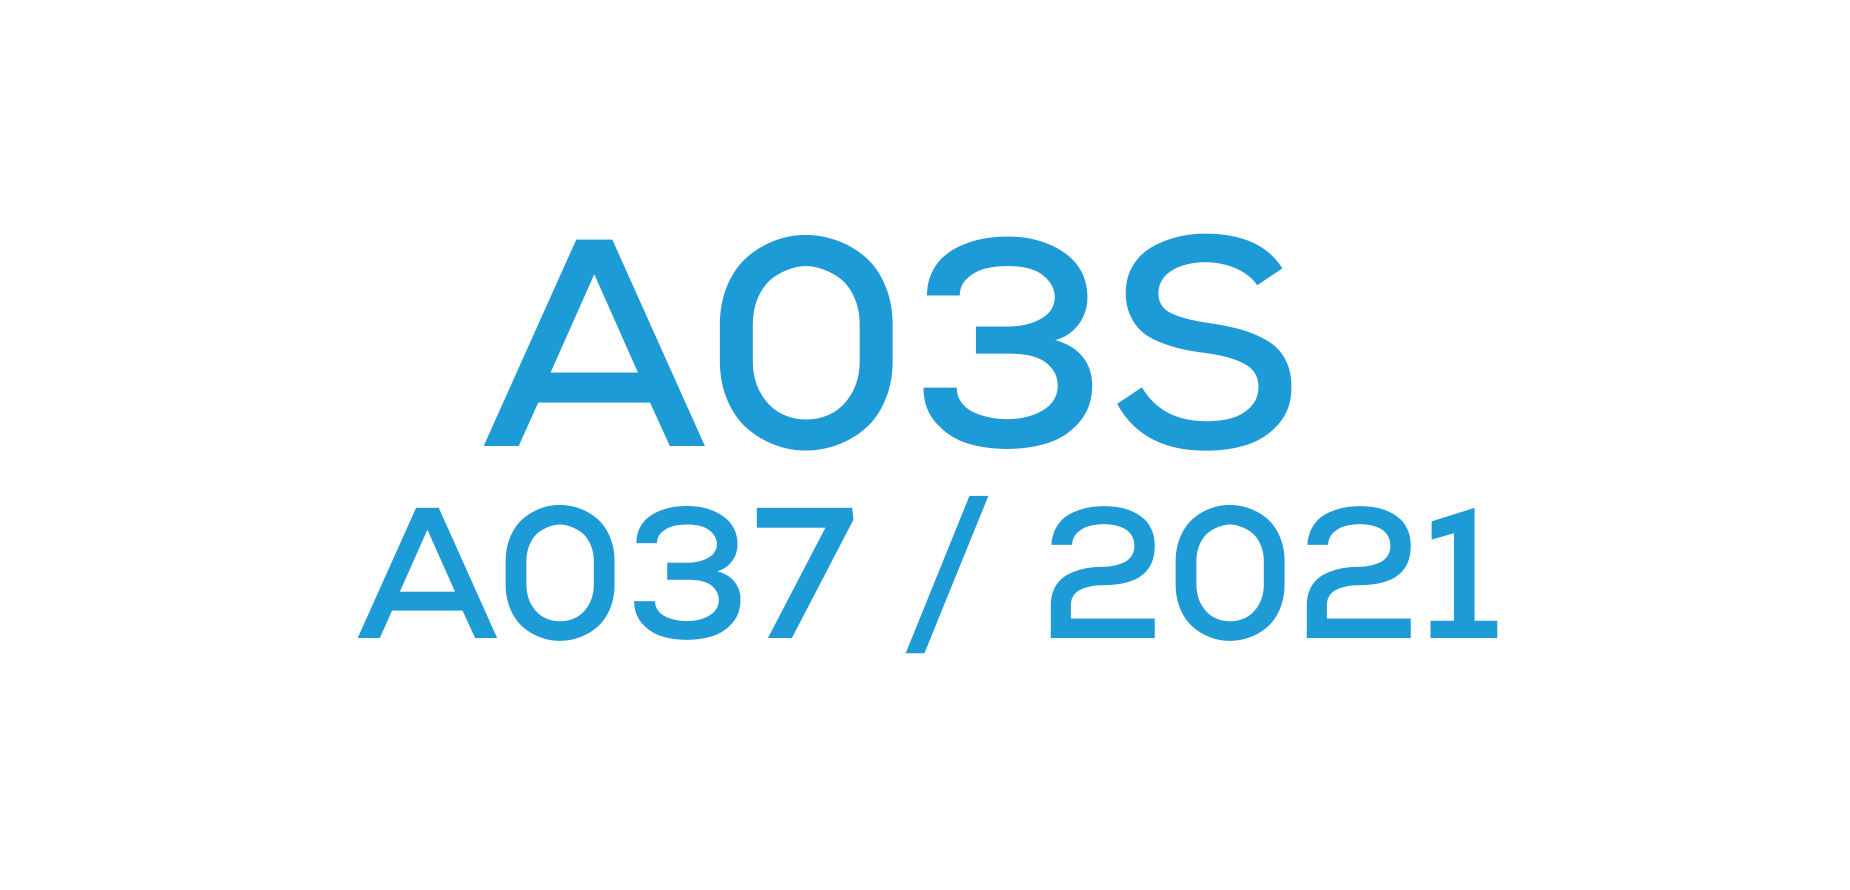 A03S (A037 / 2021)